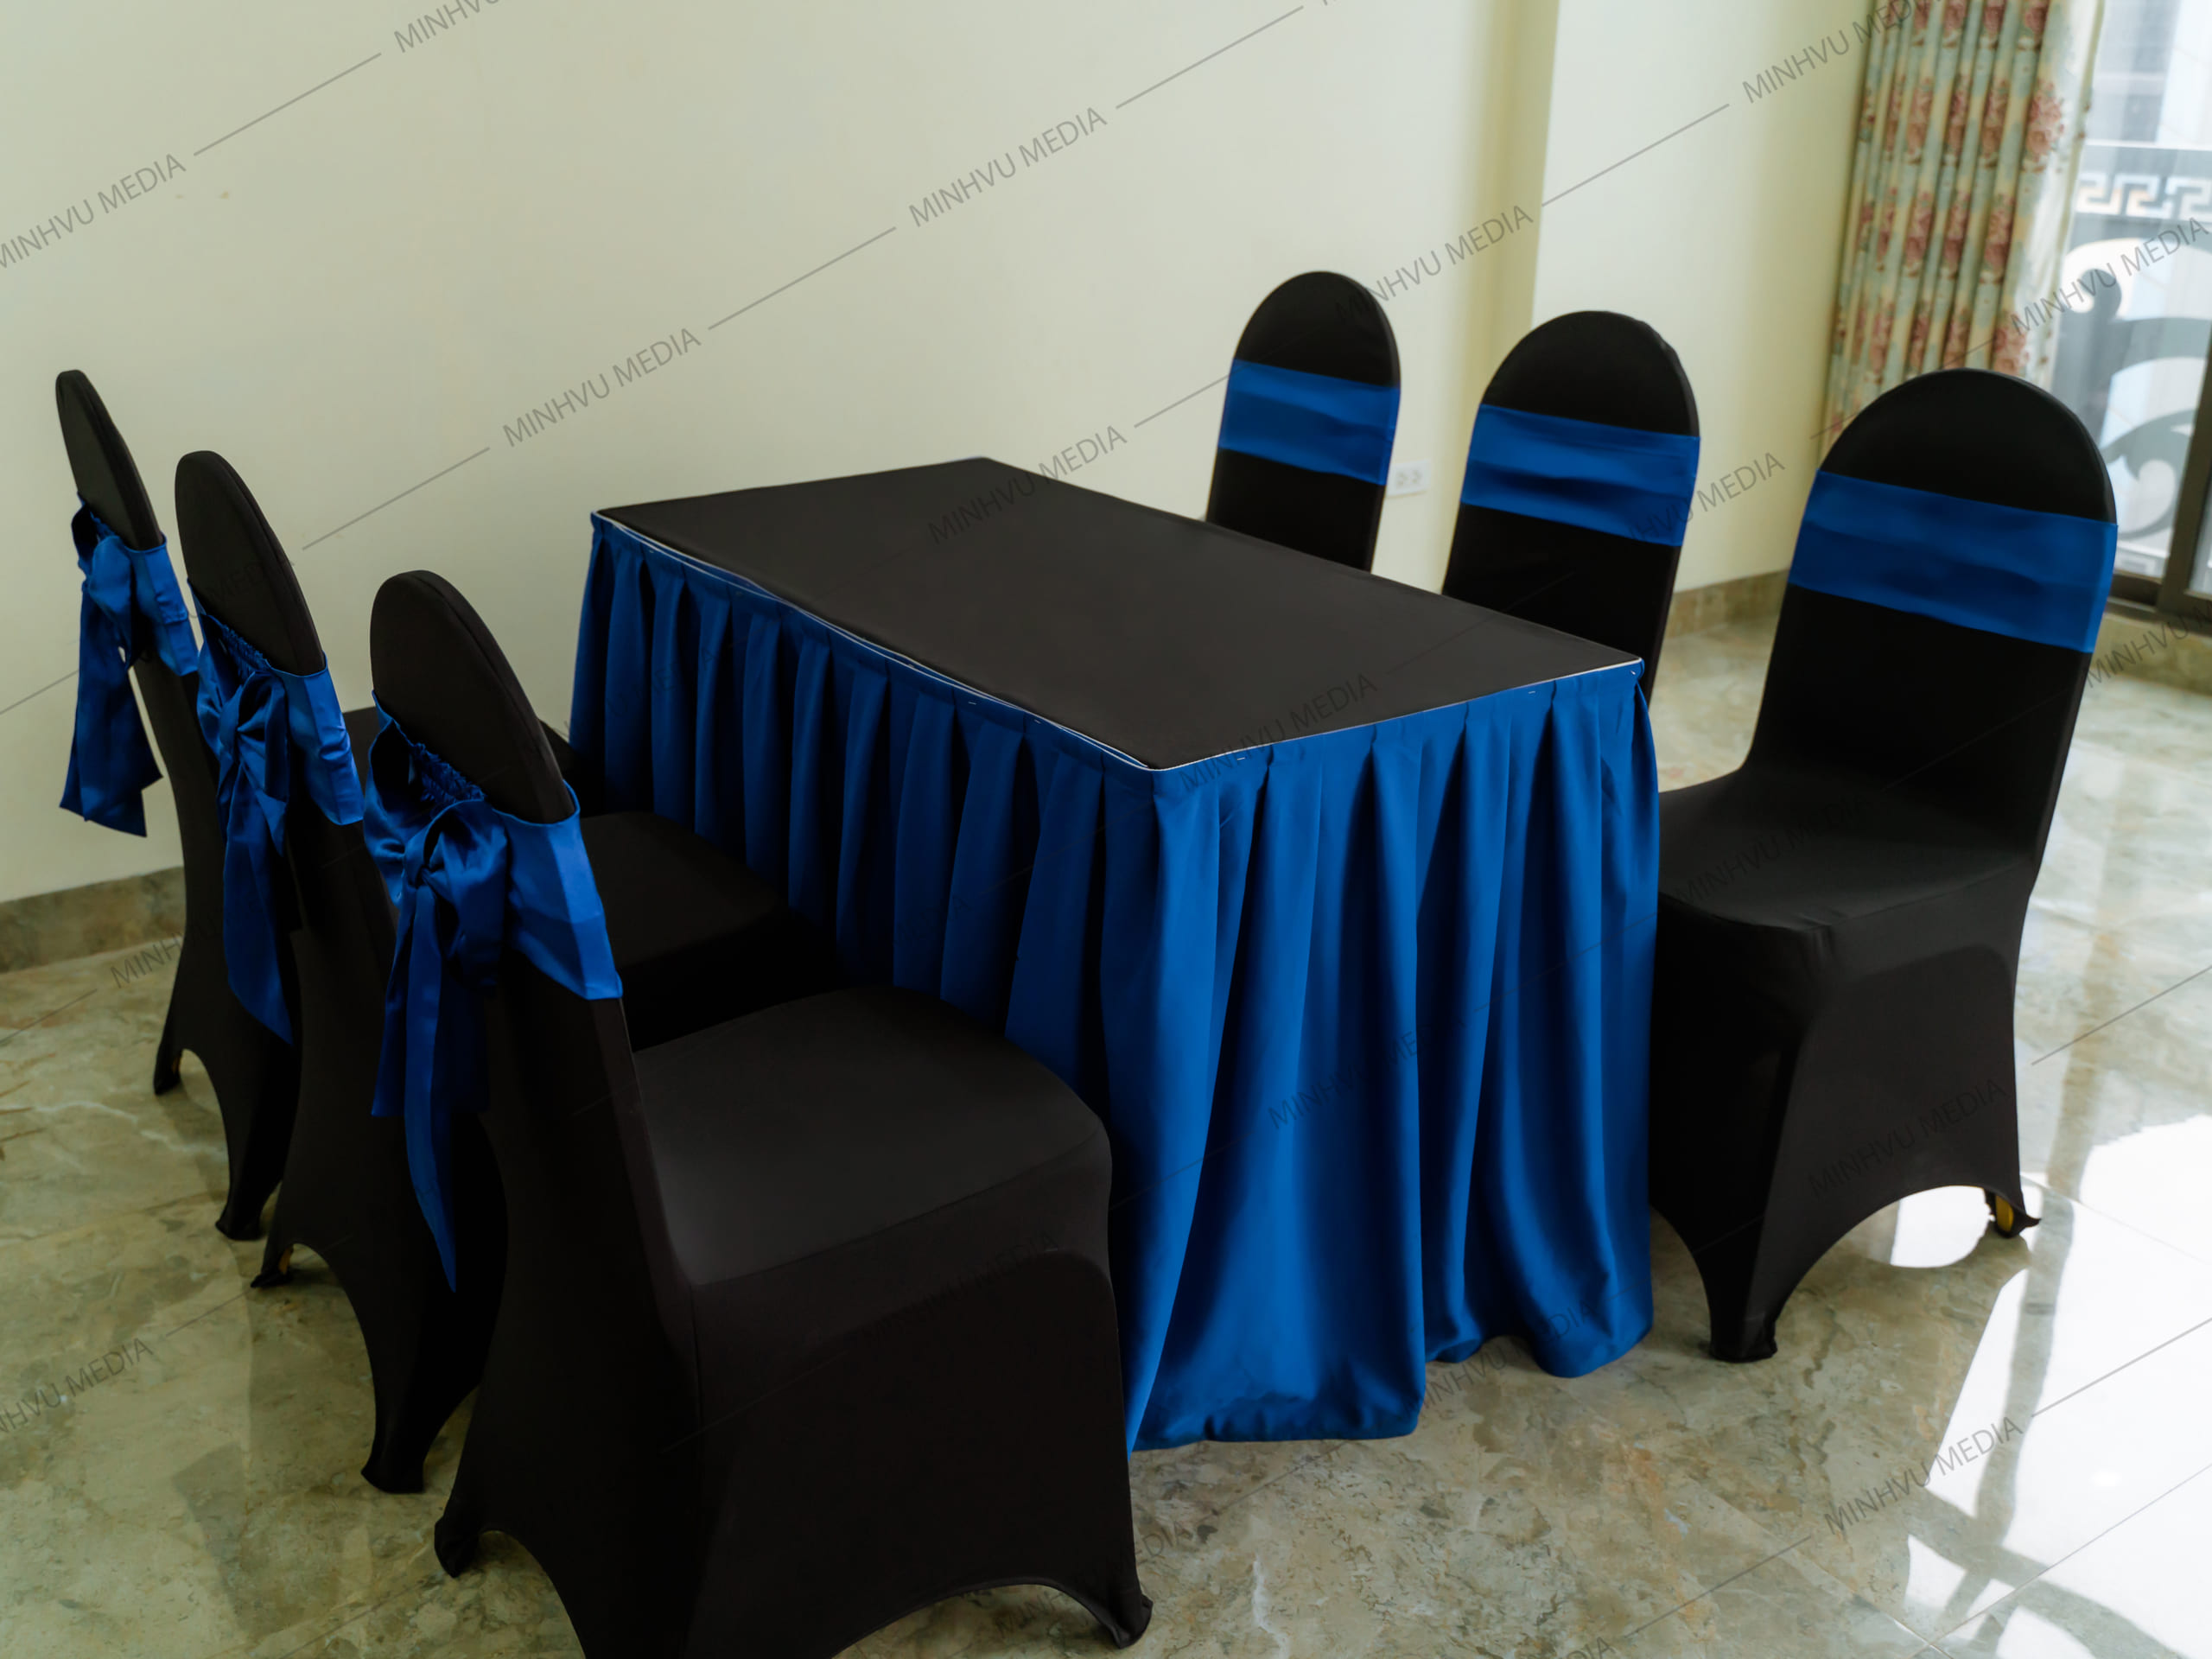 Ghế không gập Xuân Hoà kèm áo ghế đen, nơ xanh dương kết hợp bàn chữ nhật kèm khăn phủ cùng màu